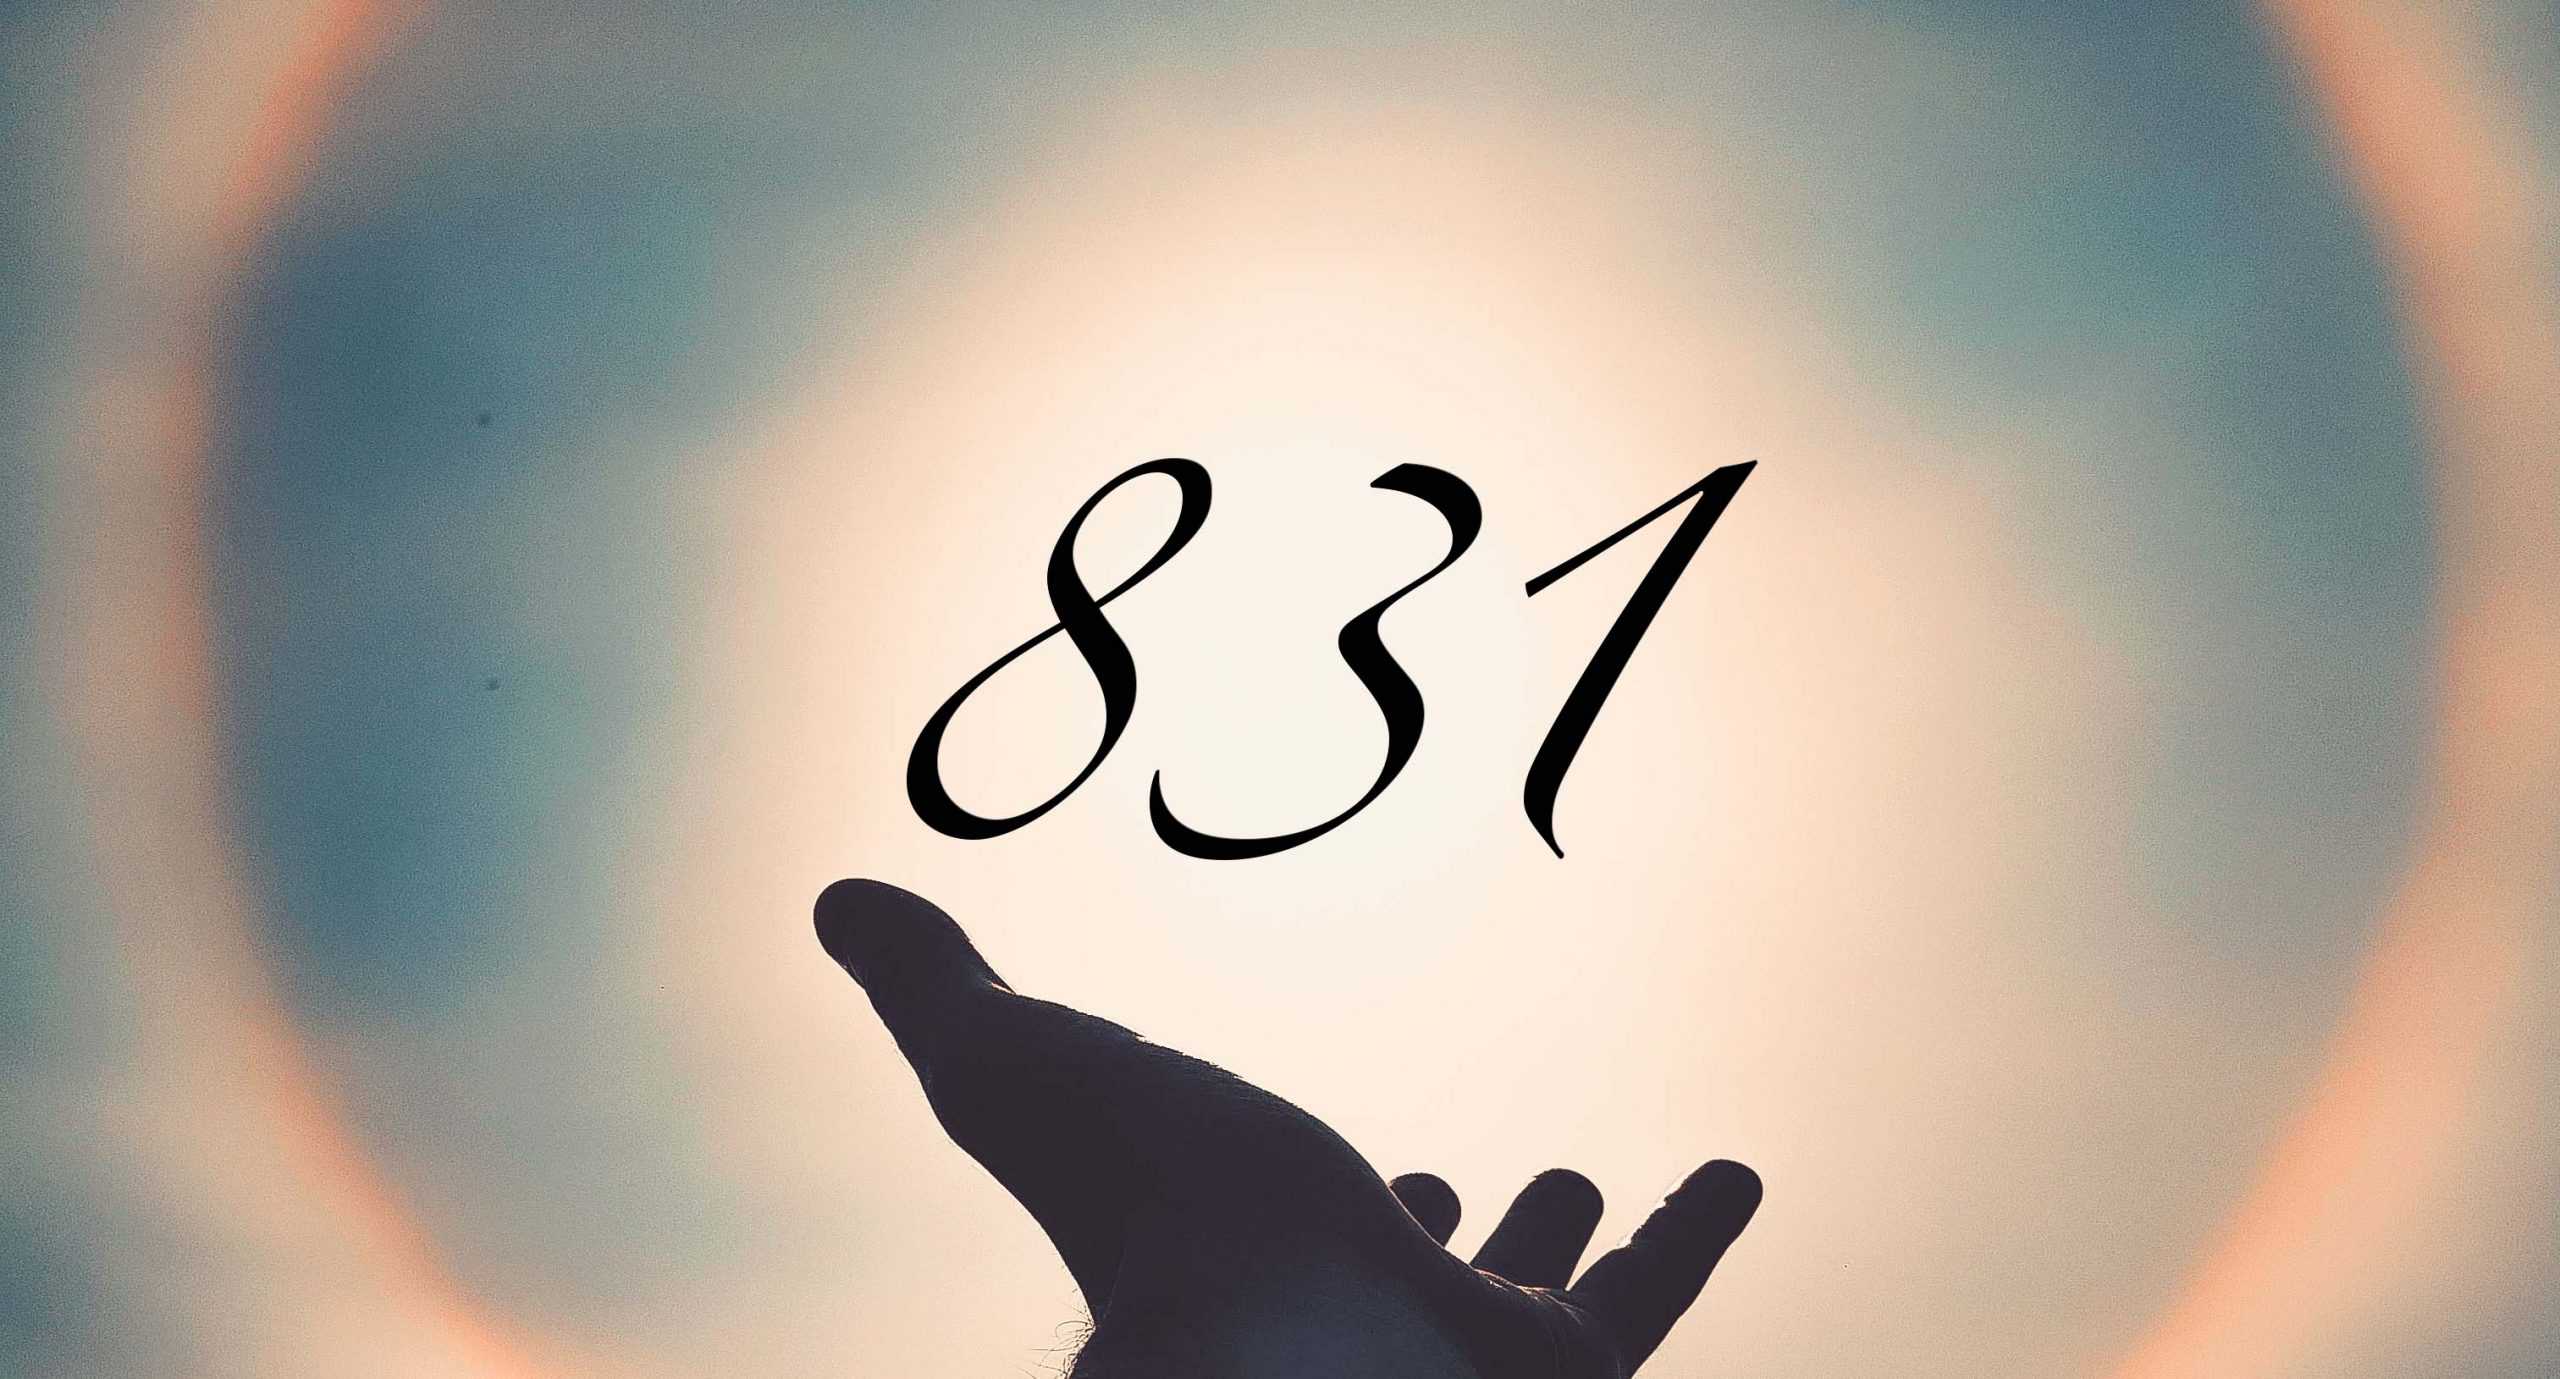 Signification du nombre 831